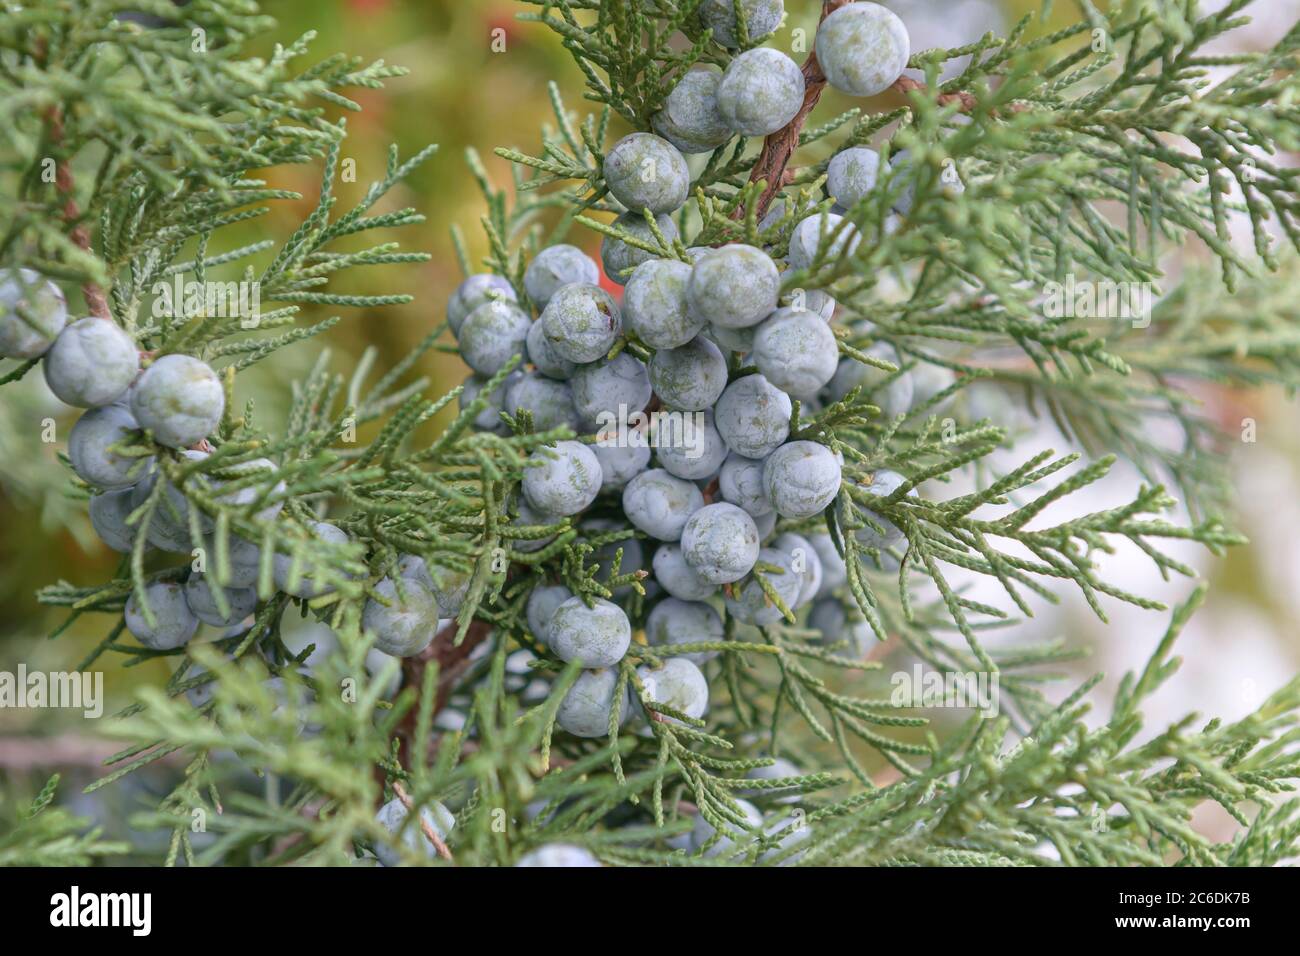 Chinesischer Wacholder, Juniperus chinensis Keteleeri, Chinese juniper, Juniperus chinensis Keteleeri Stock Photo